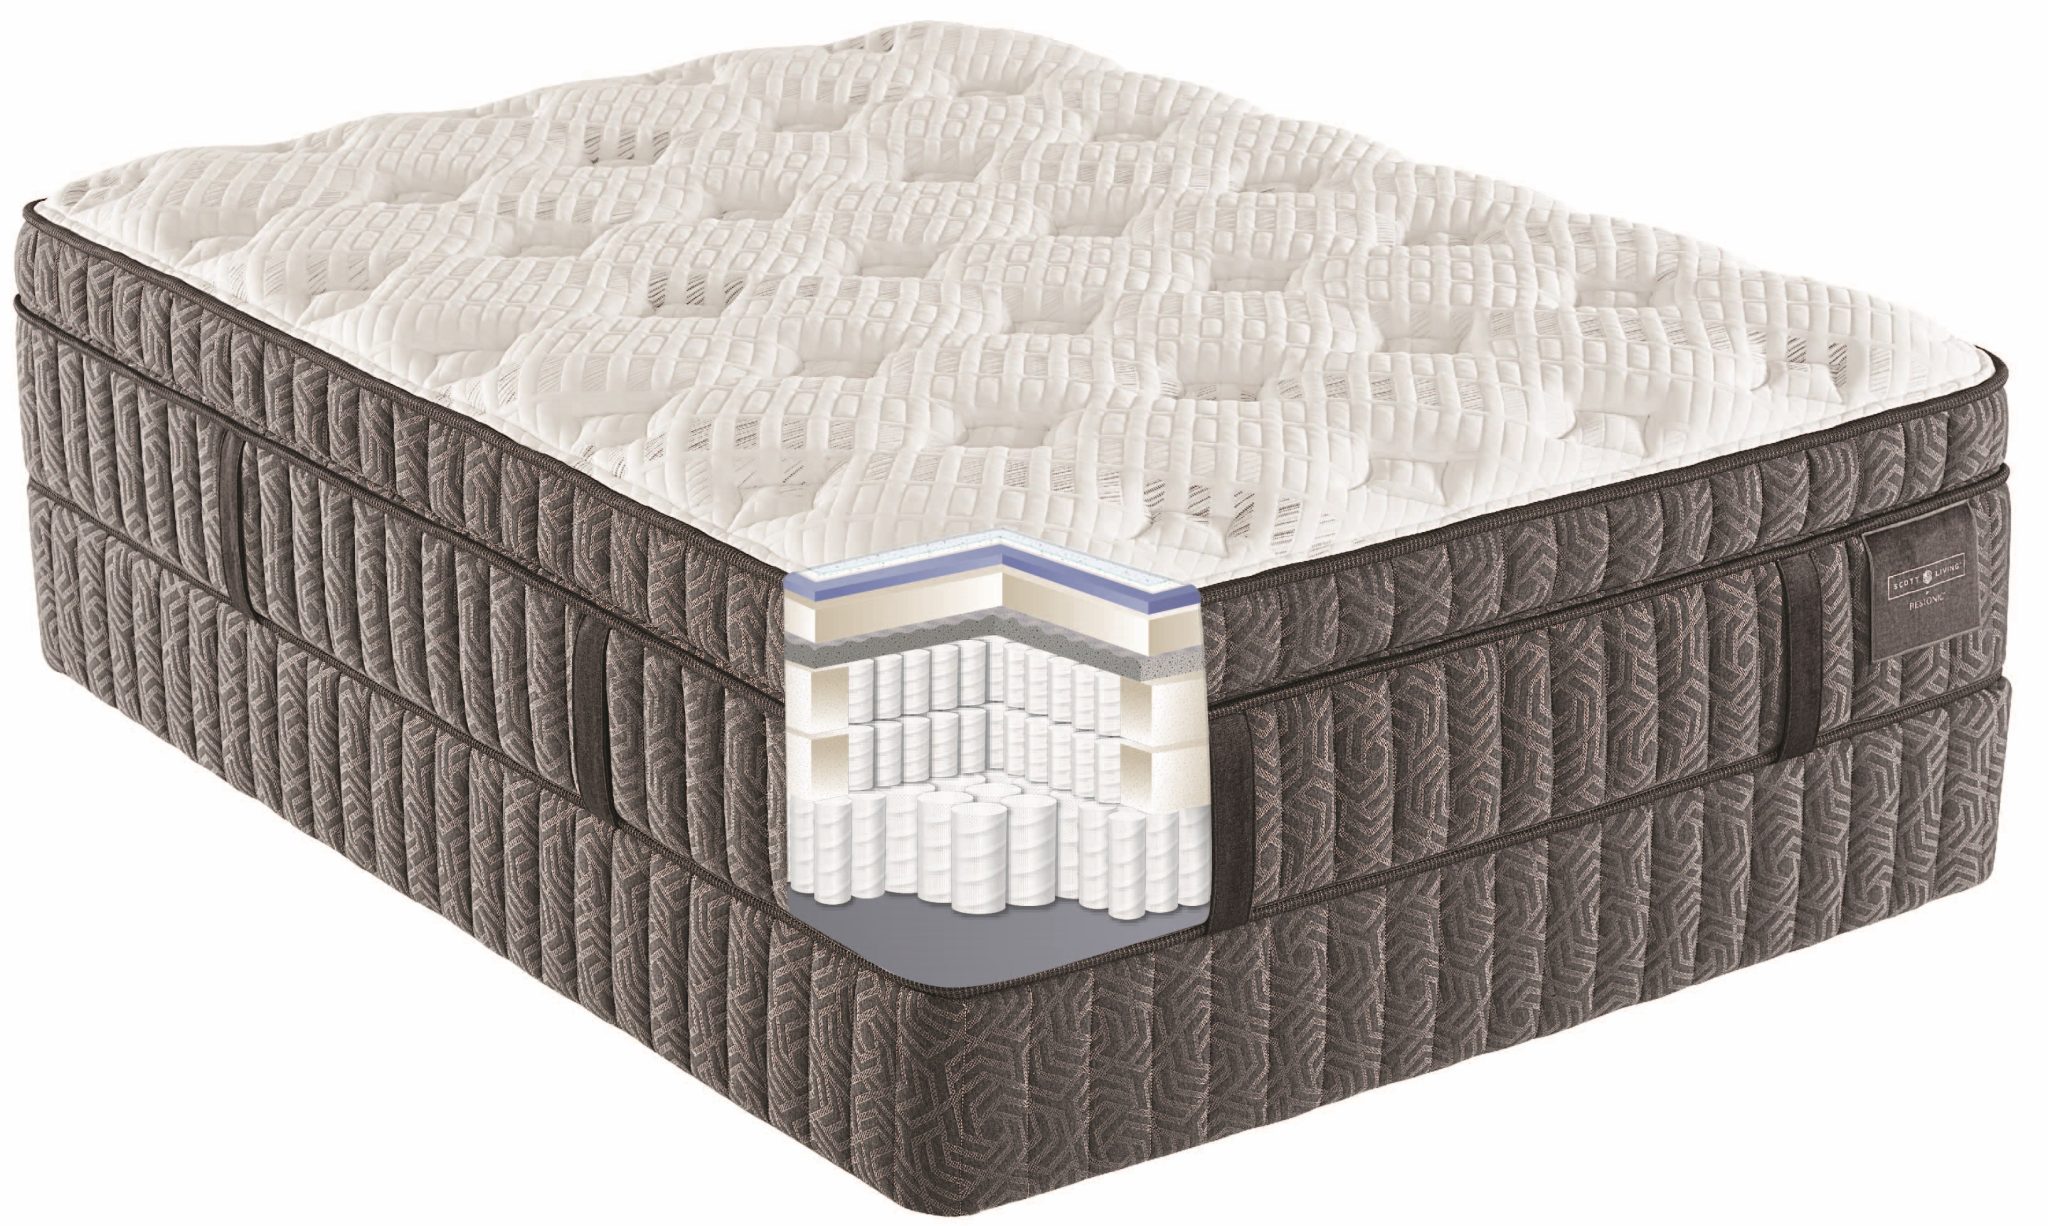 boori latex mattress review